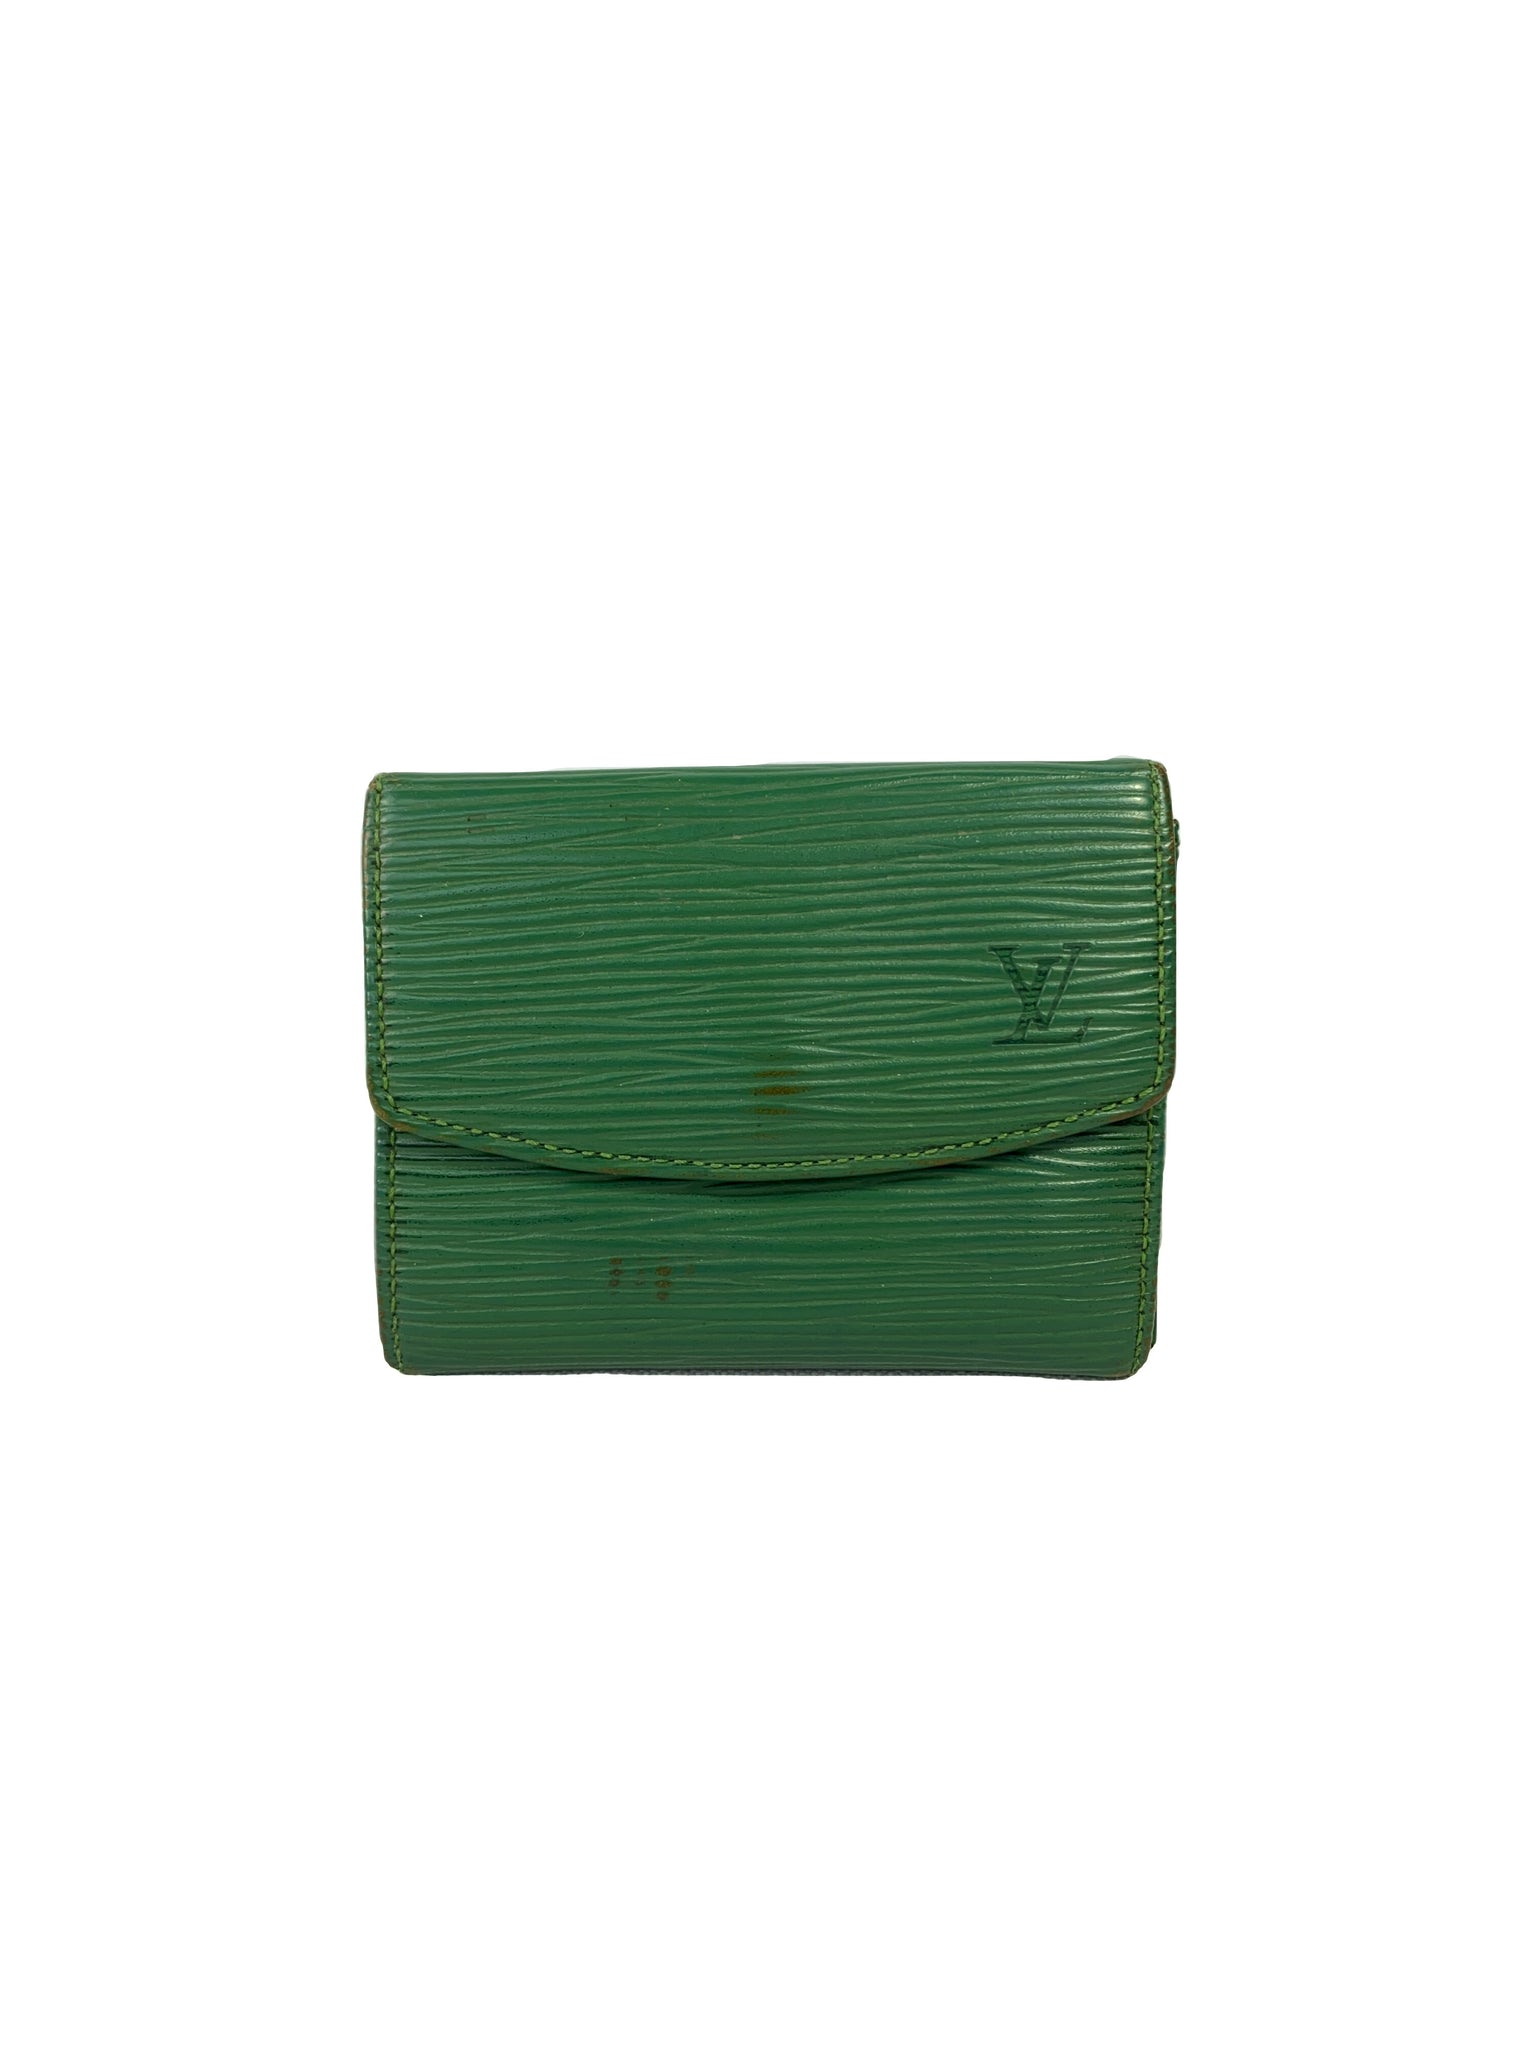 Louis Vuitton, Bags, Genuine Vintage Louis Vuitton Wallet